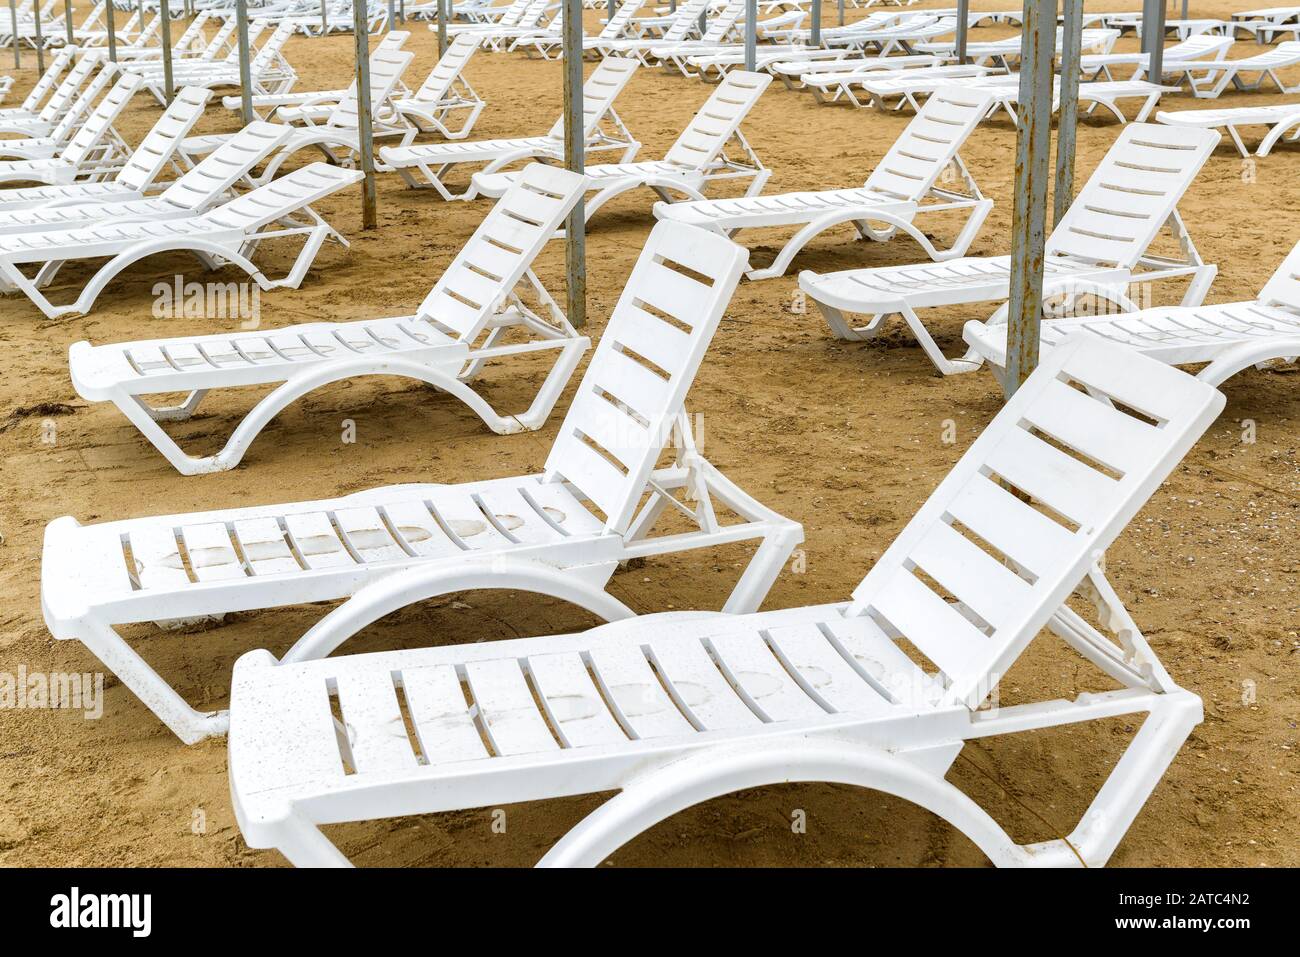 Chaises de plage en dehors de la saison. Transats vides sur une plage de sable. Banque D'Images